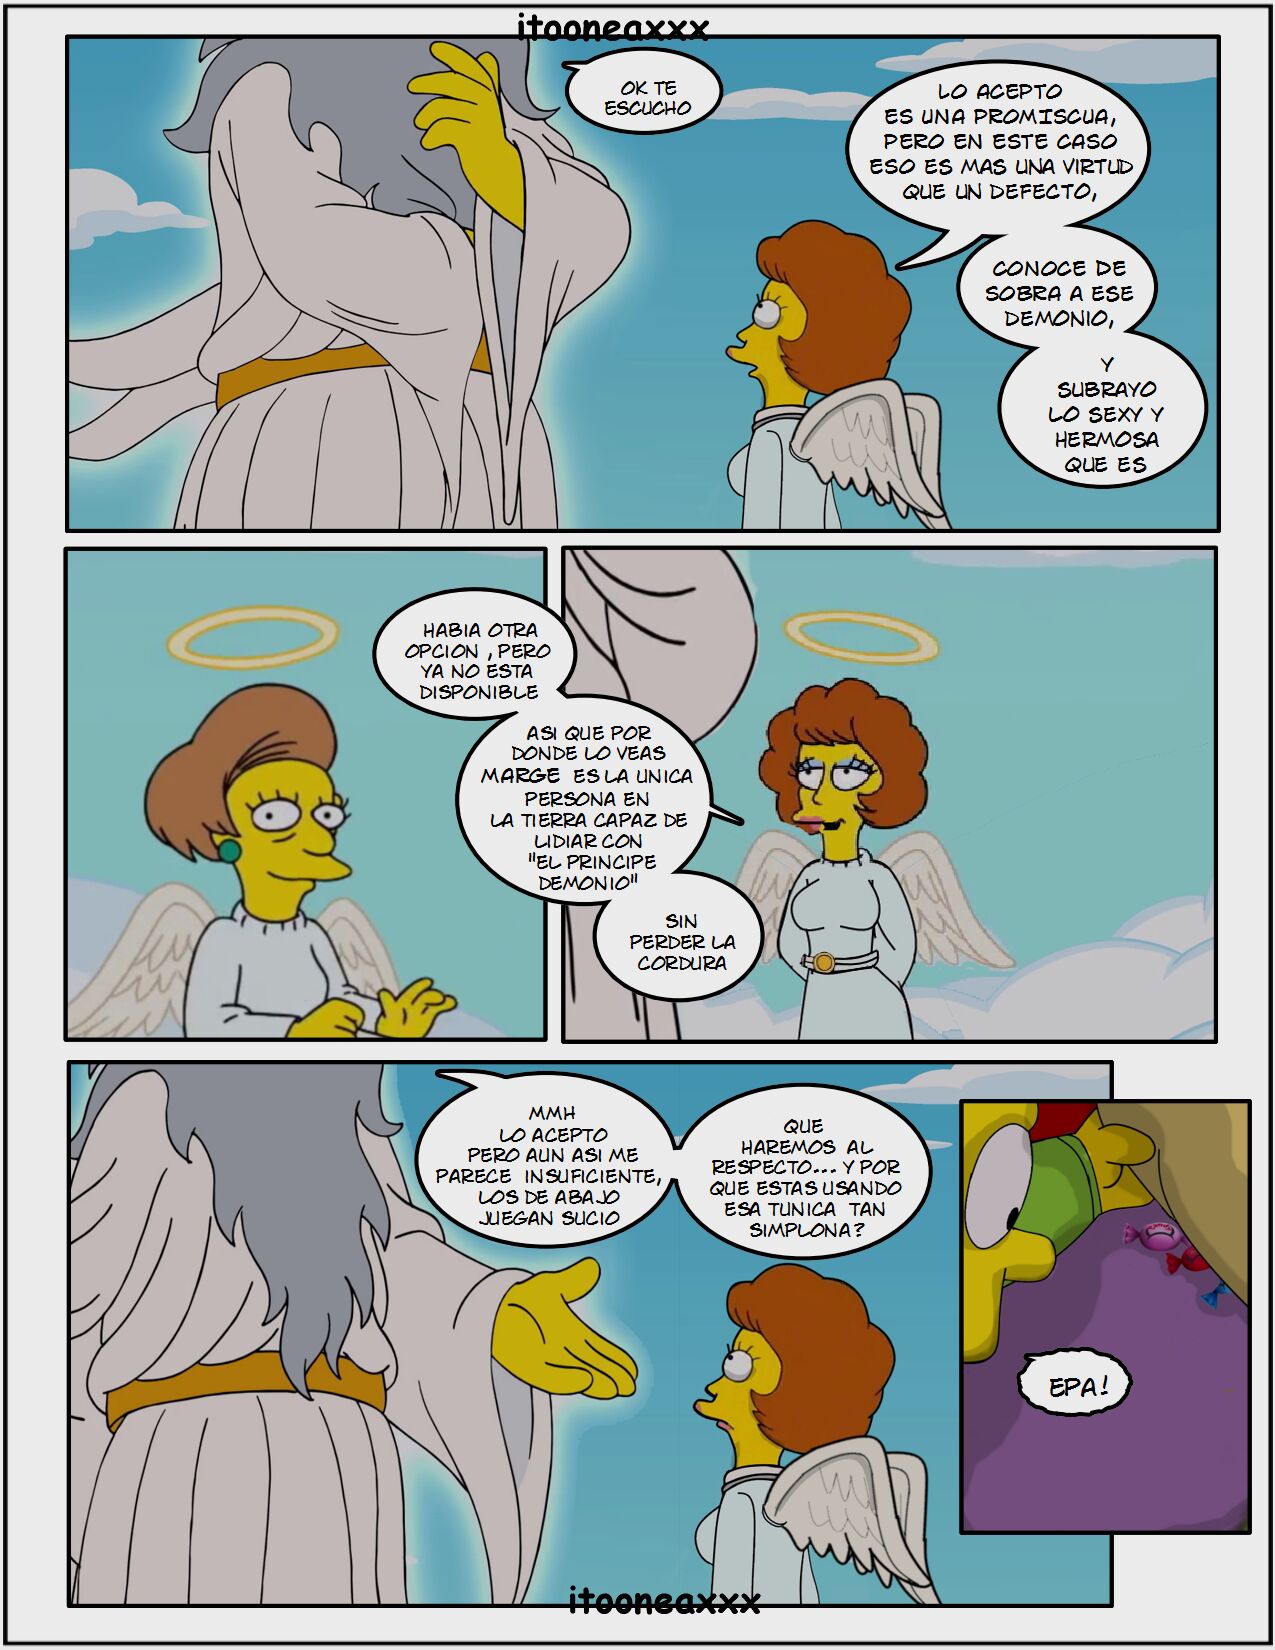 Simpsons xxx - Edipo - Page 7 - HentaiEra